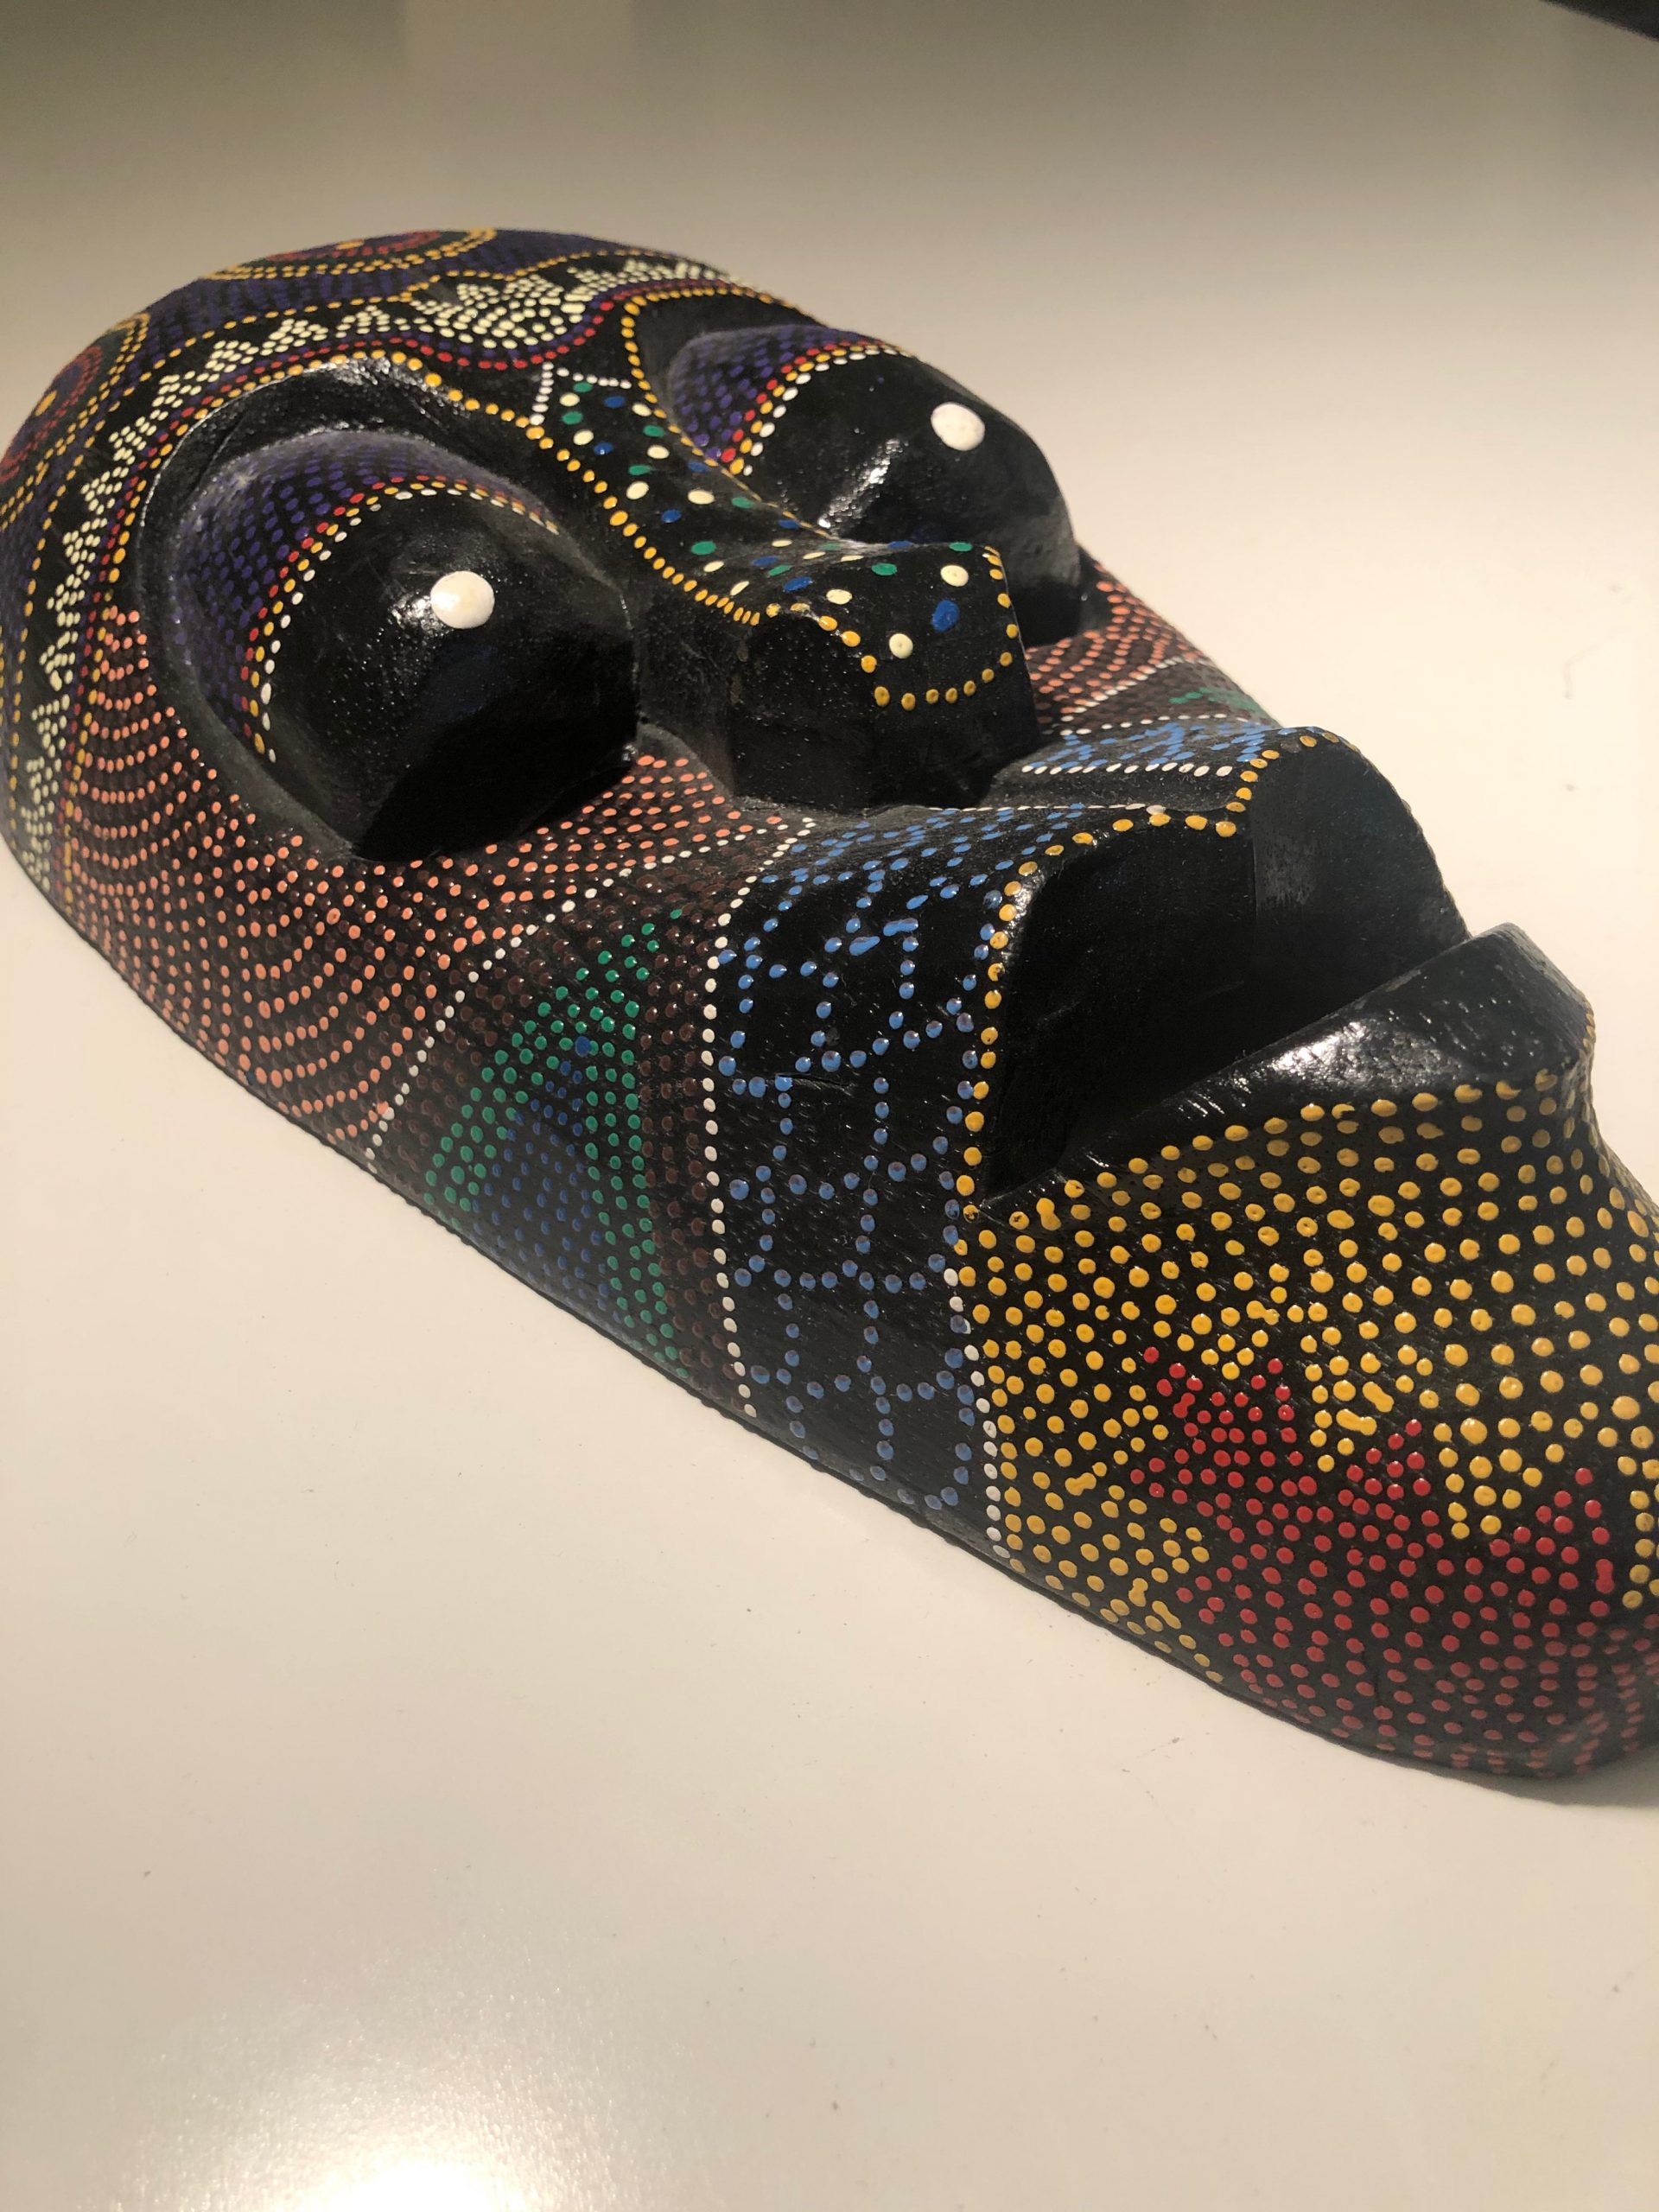 Handmade Tribal Mask